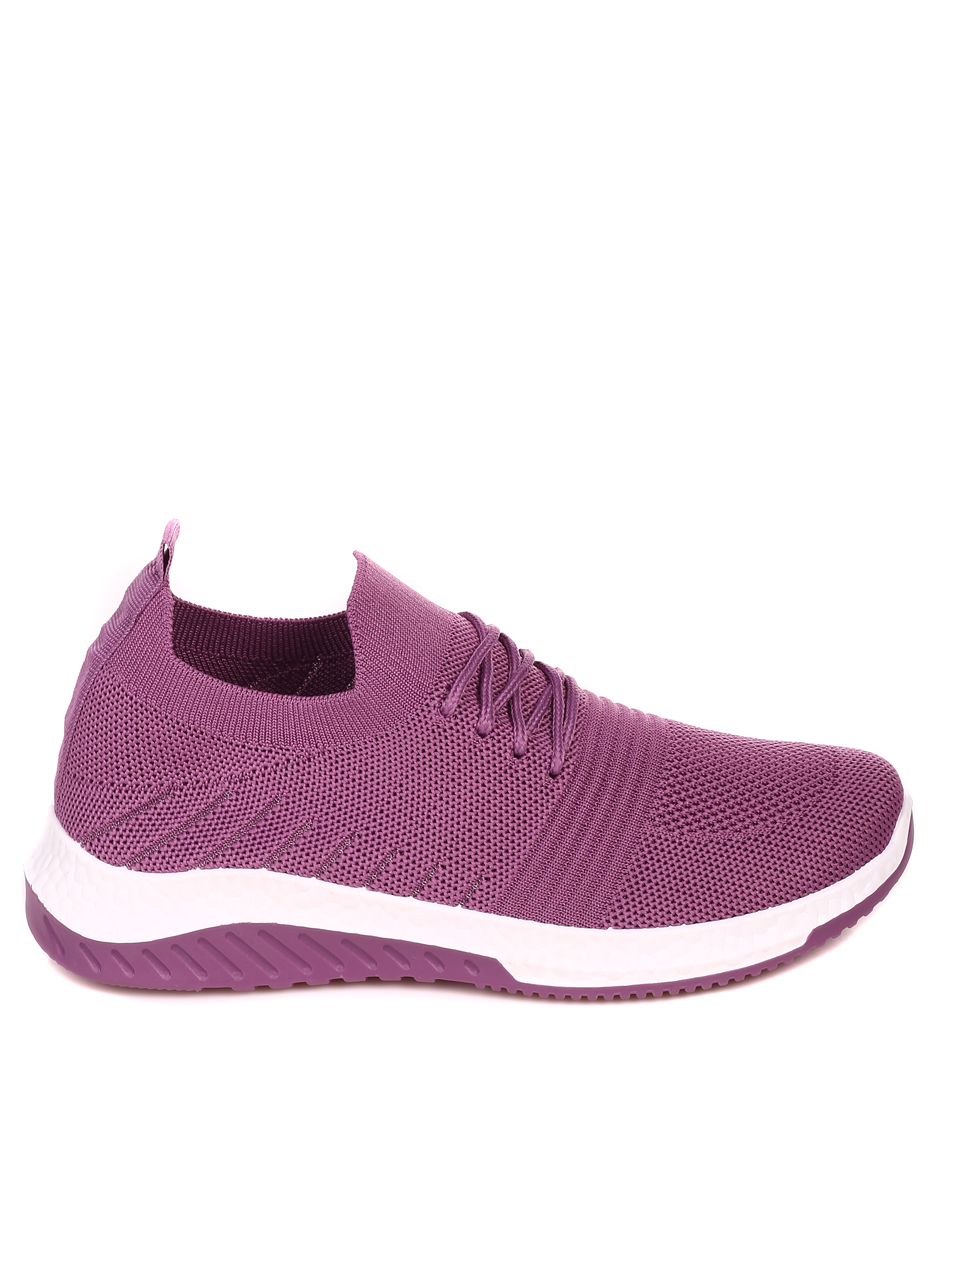 Ежедневни дамски обувки в лилаво 3U-22042 purple